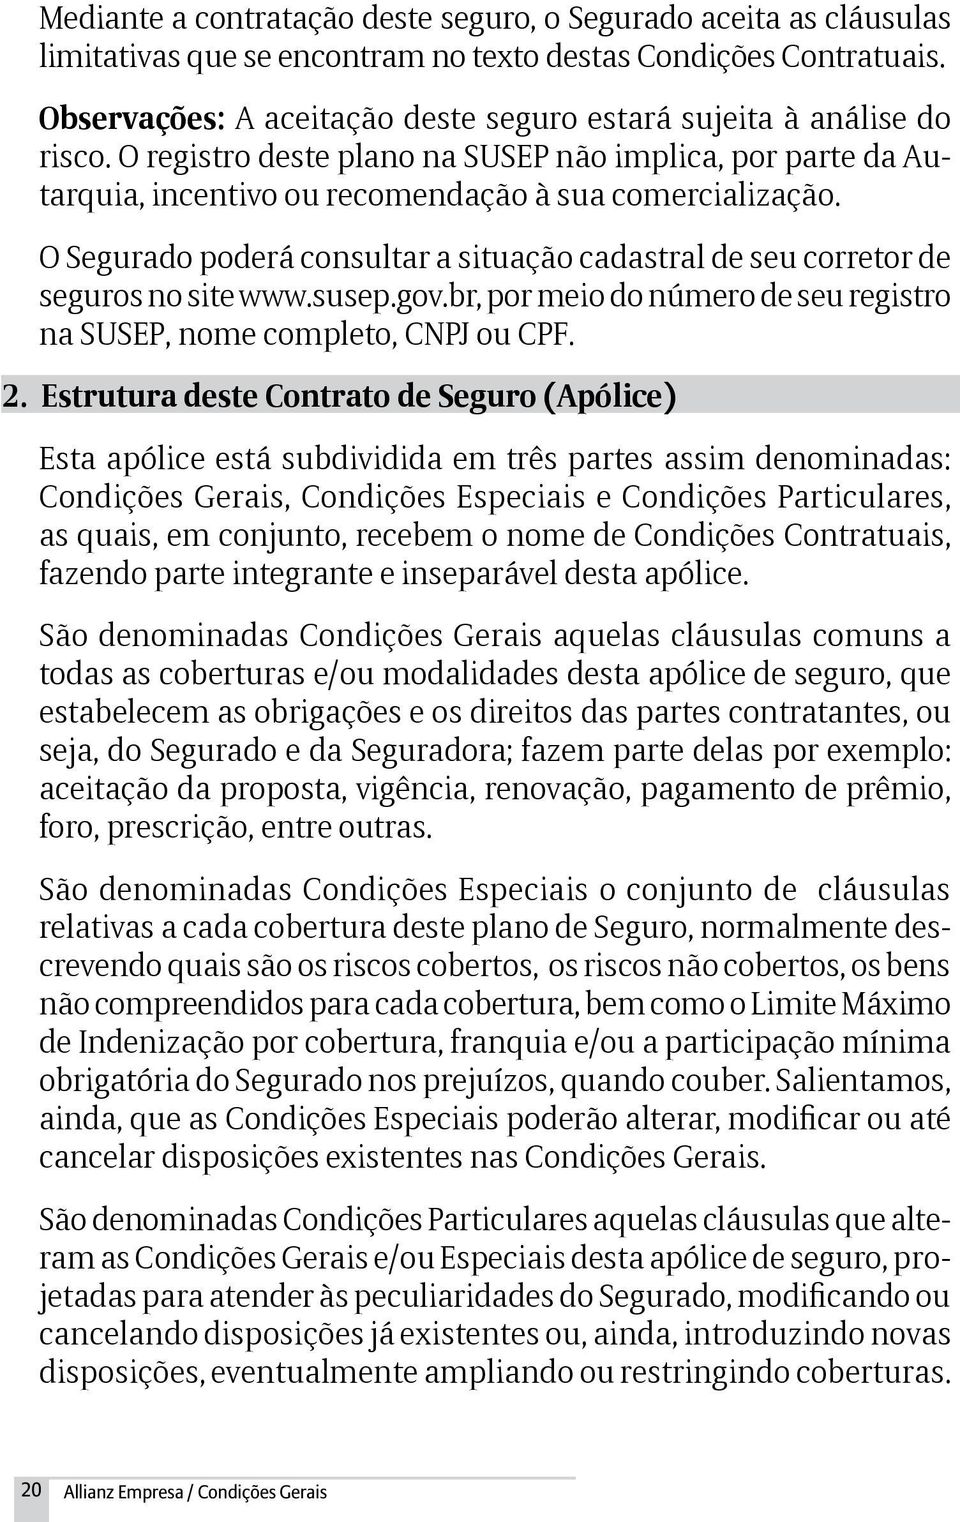 O Segurado poderá consultar a situação cadastral de seu corretor de seguros no site www.susep.gov.br, por meio do número de seu registro na SUSEP, nome completo, CNPJ ou CPF. 2.